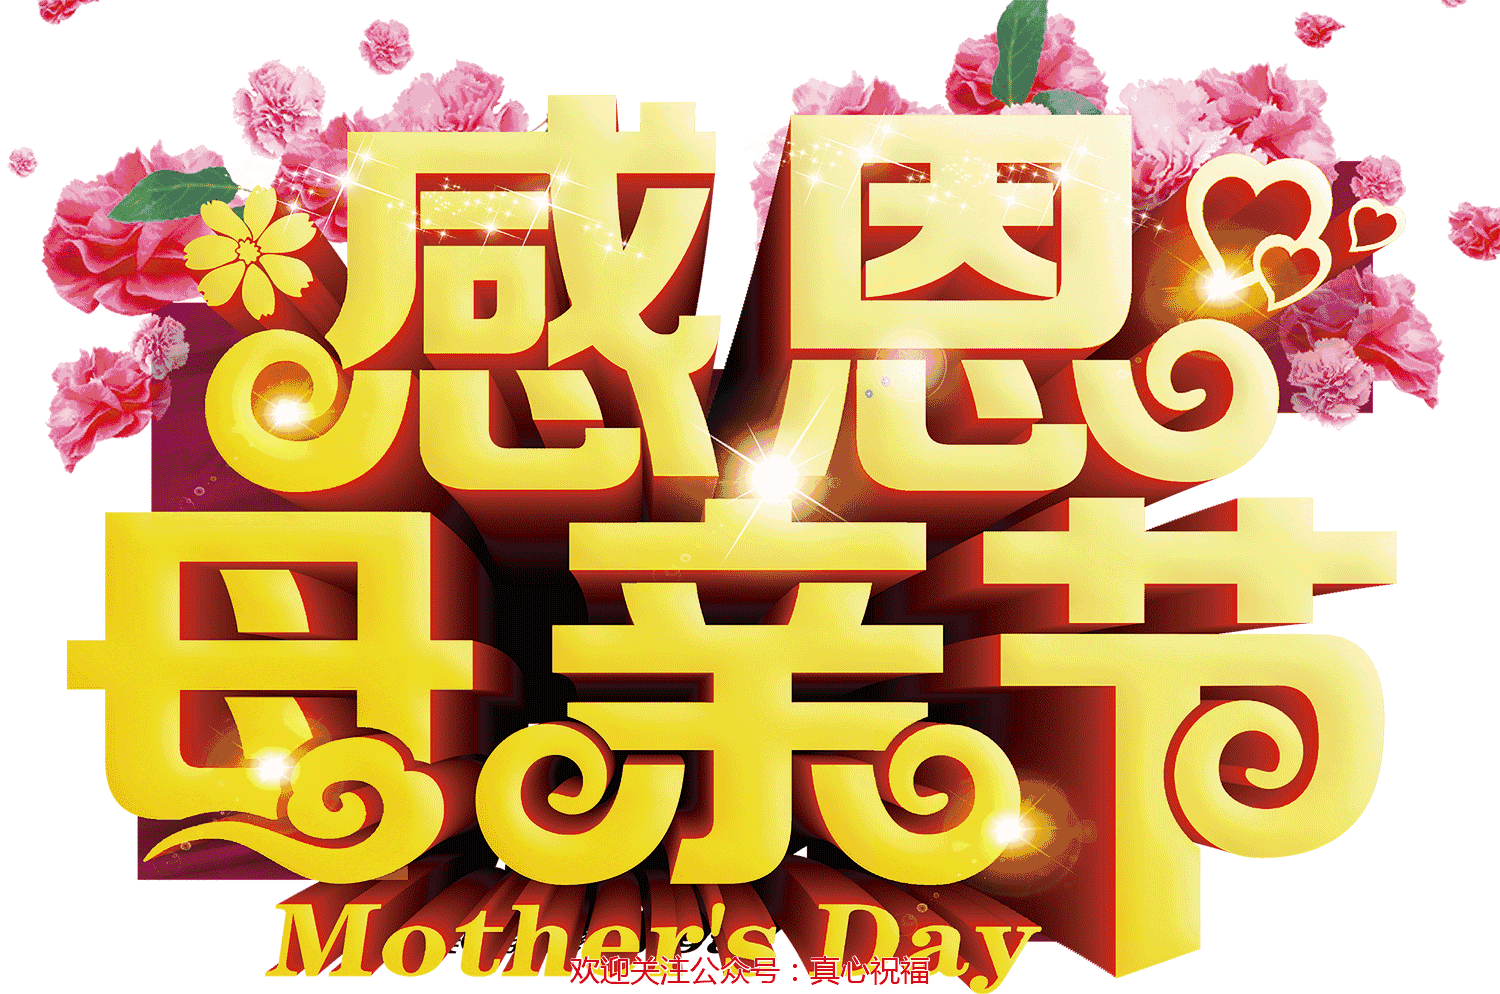 母亲节到了,最好的祝福送给天下所有的母亲,祝安康幸福一生!